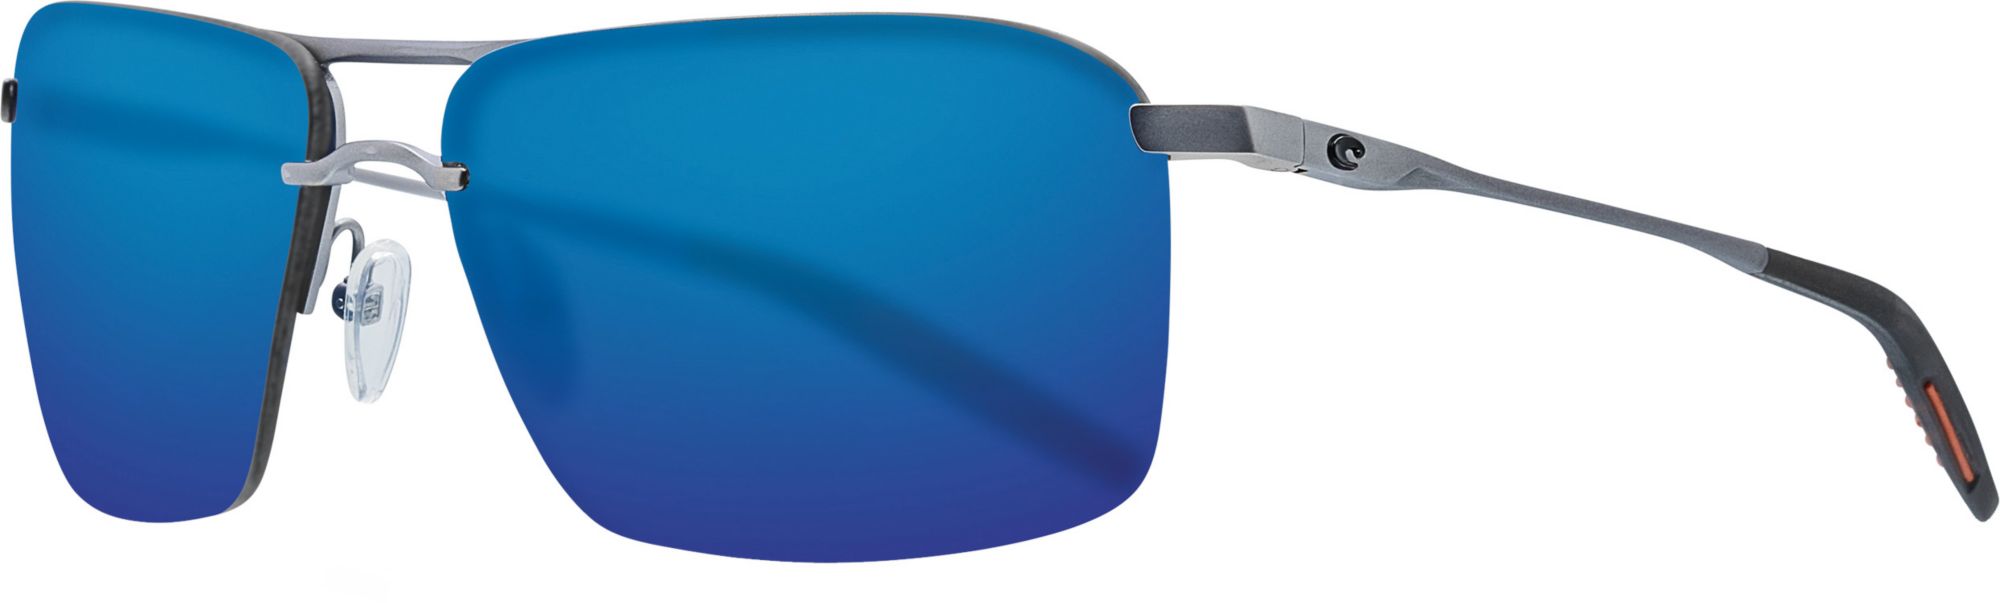 Photos - Sunglasses Costa Del Mar Skimmer 580P Polarized , Men's, Matte Silver/Blue 